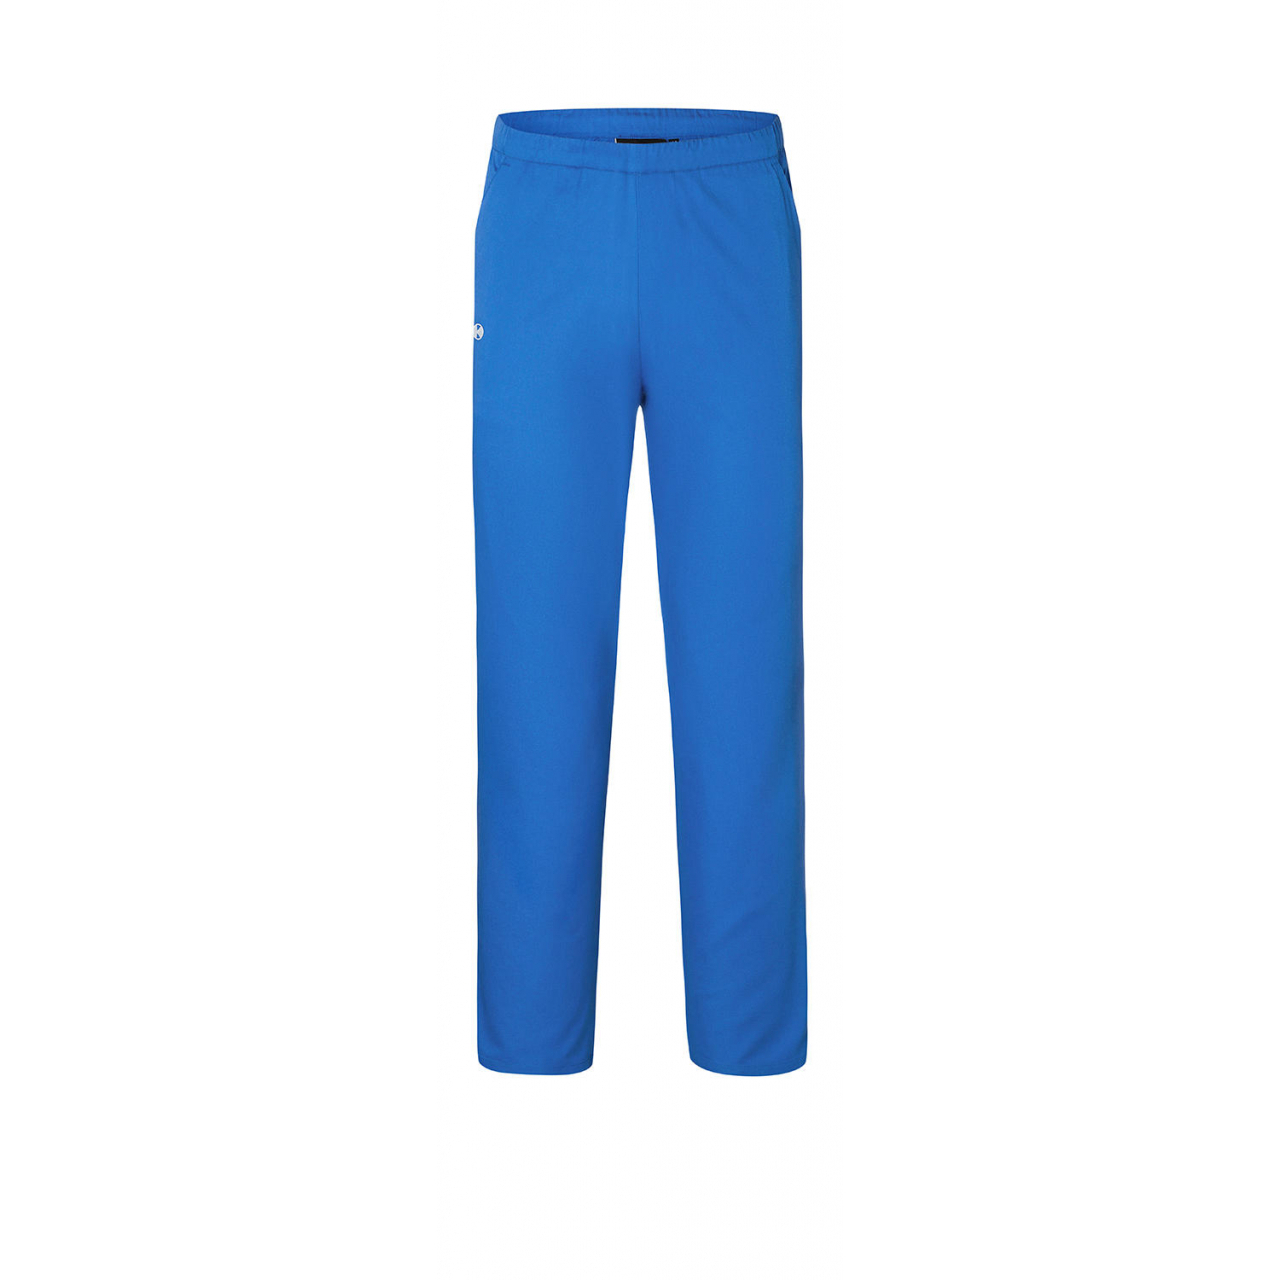 Kalhoty Karlowsky Essential - modré, XS